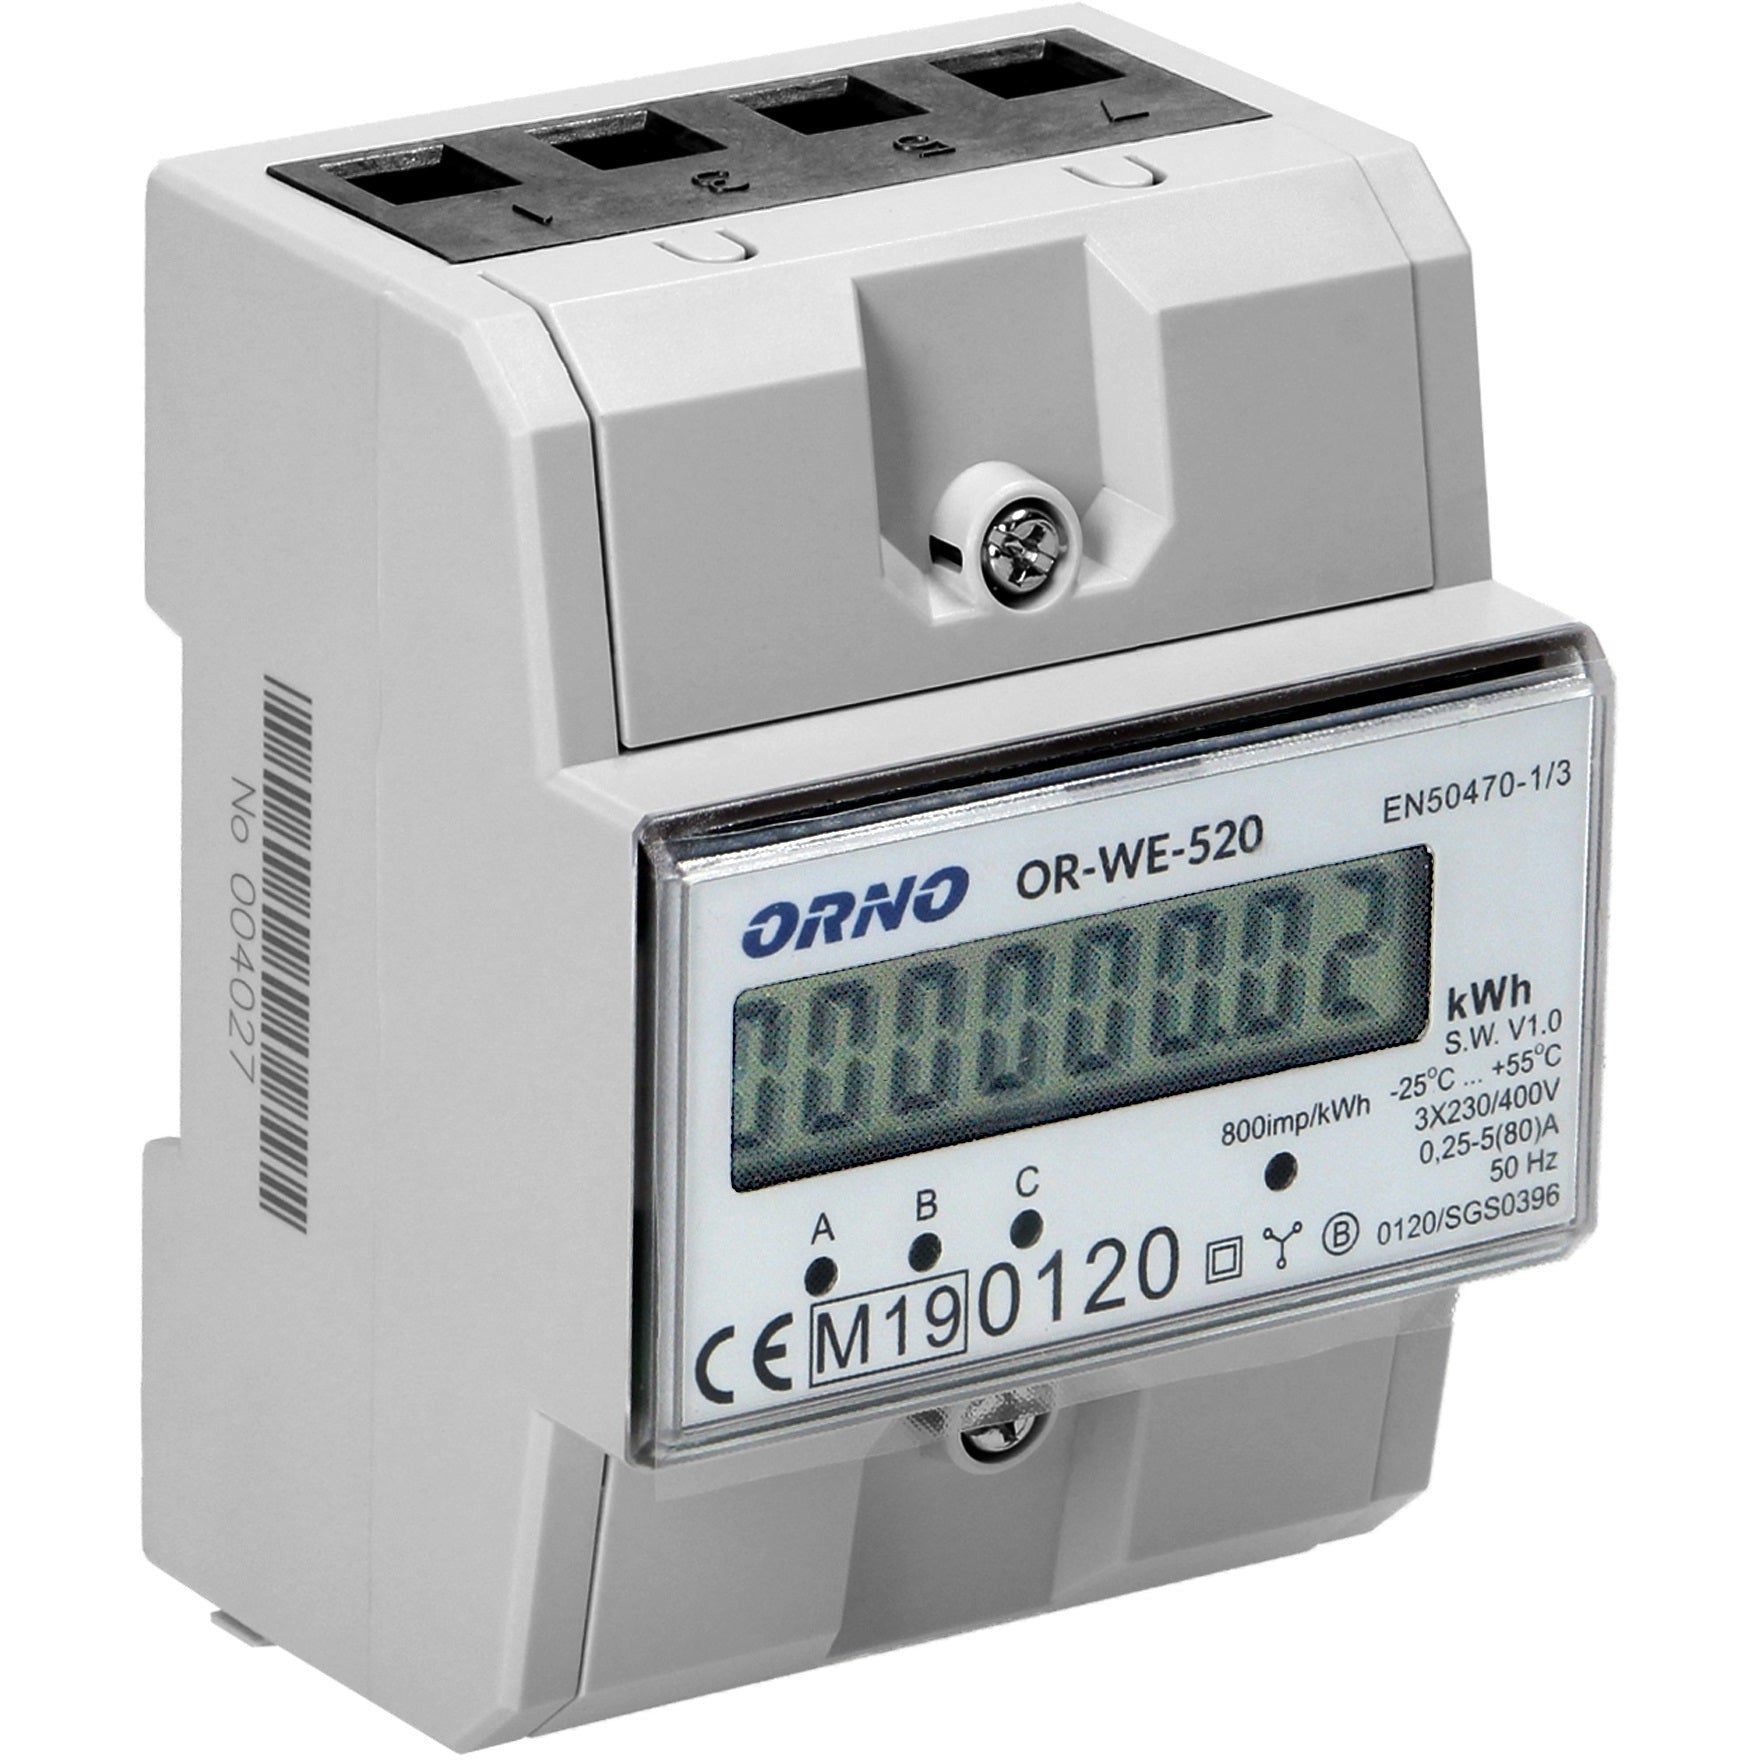 Orno OR-WE-520 LCD digitaler Drehstromzähler mit MID Zertifikat, 3-phasig